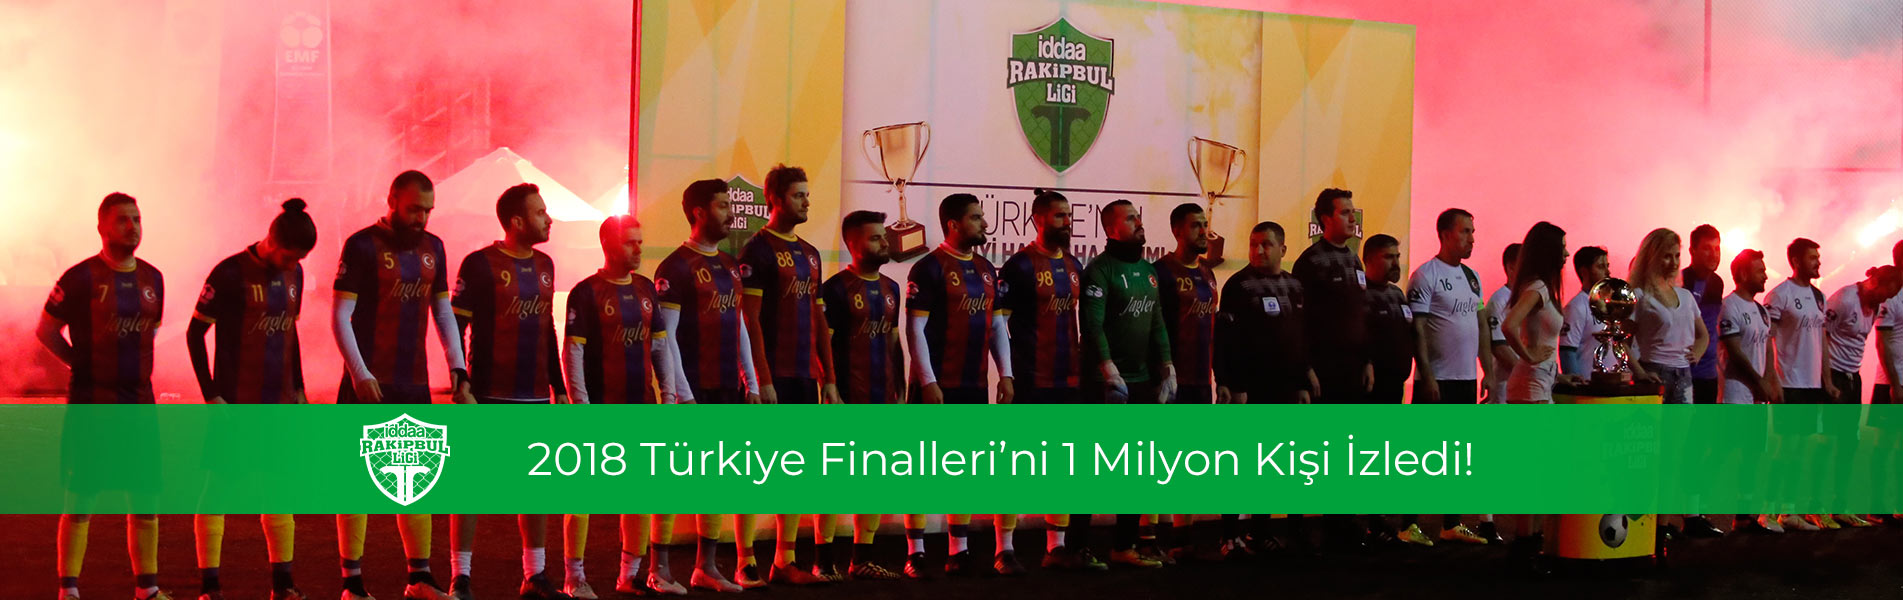 iddaa Rakipbul Ligi Türkiye Finalleri'ni 1 Milyon Kişi İzledi